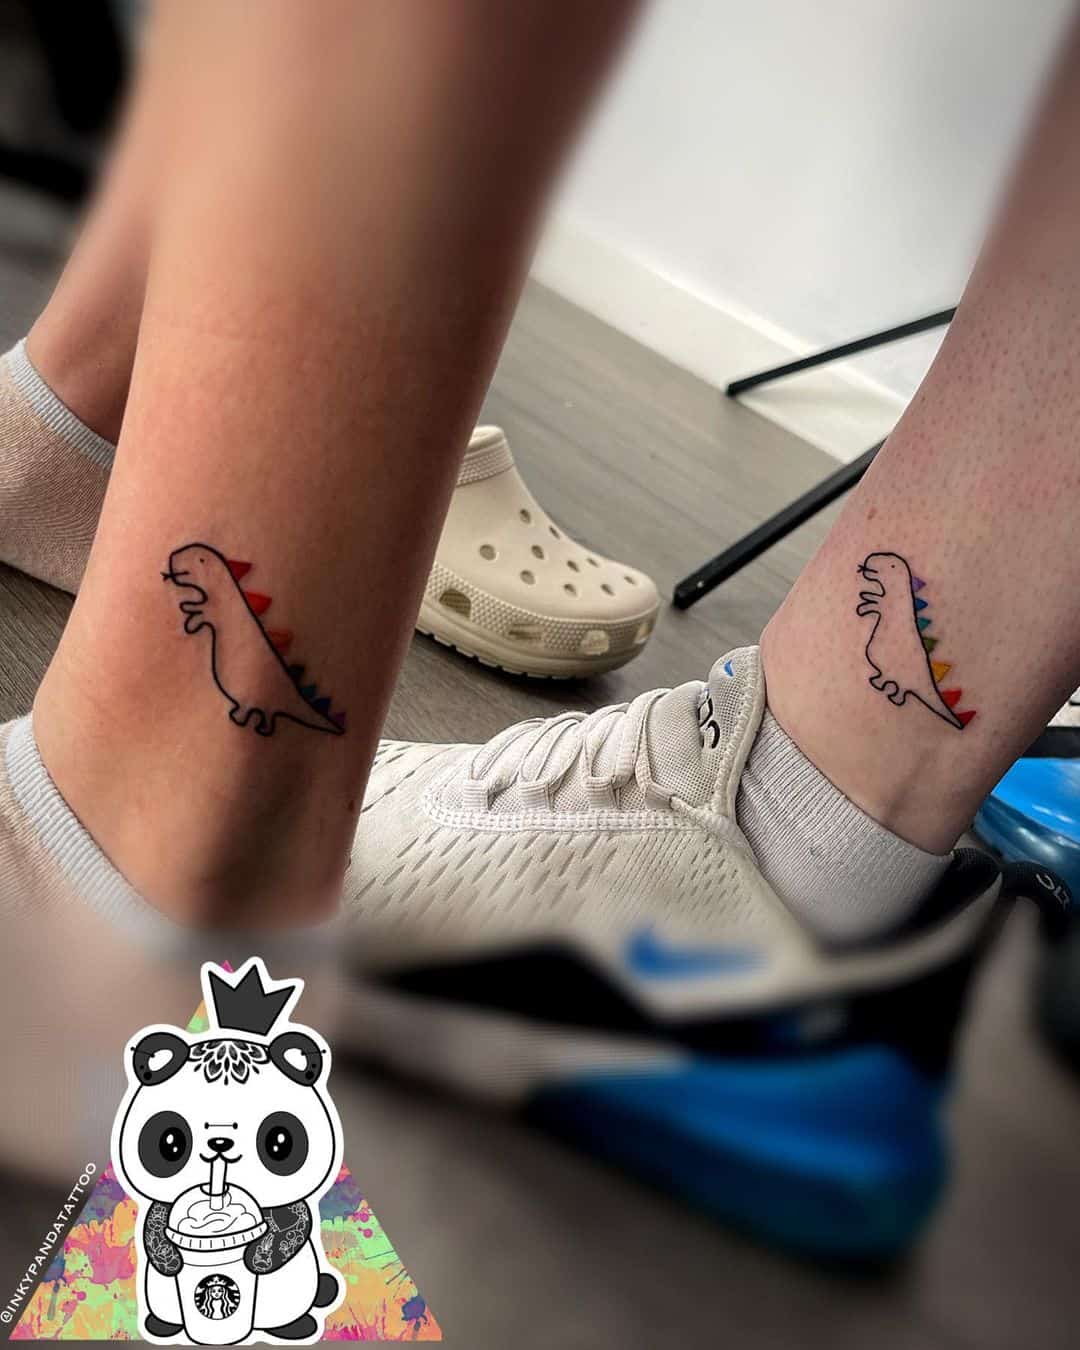 couple matching tattoo ideas - KickAss Things